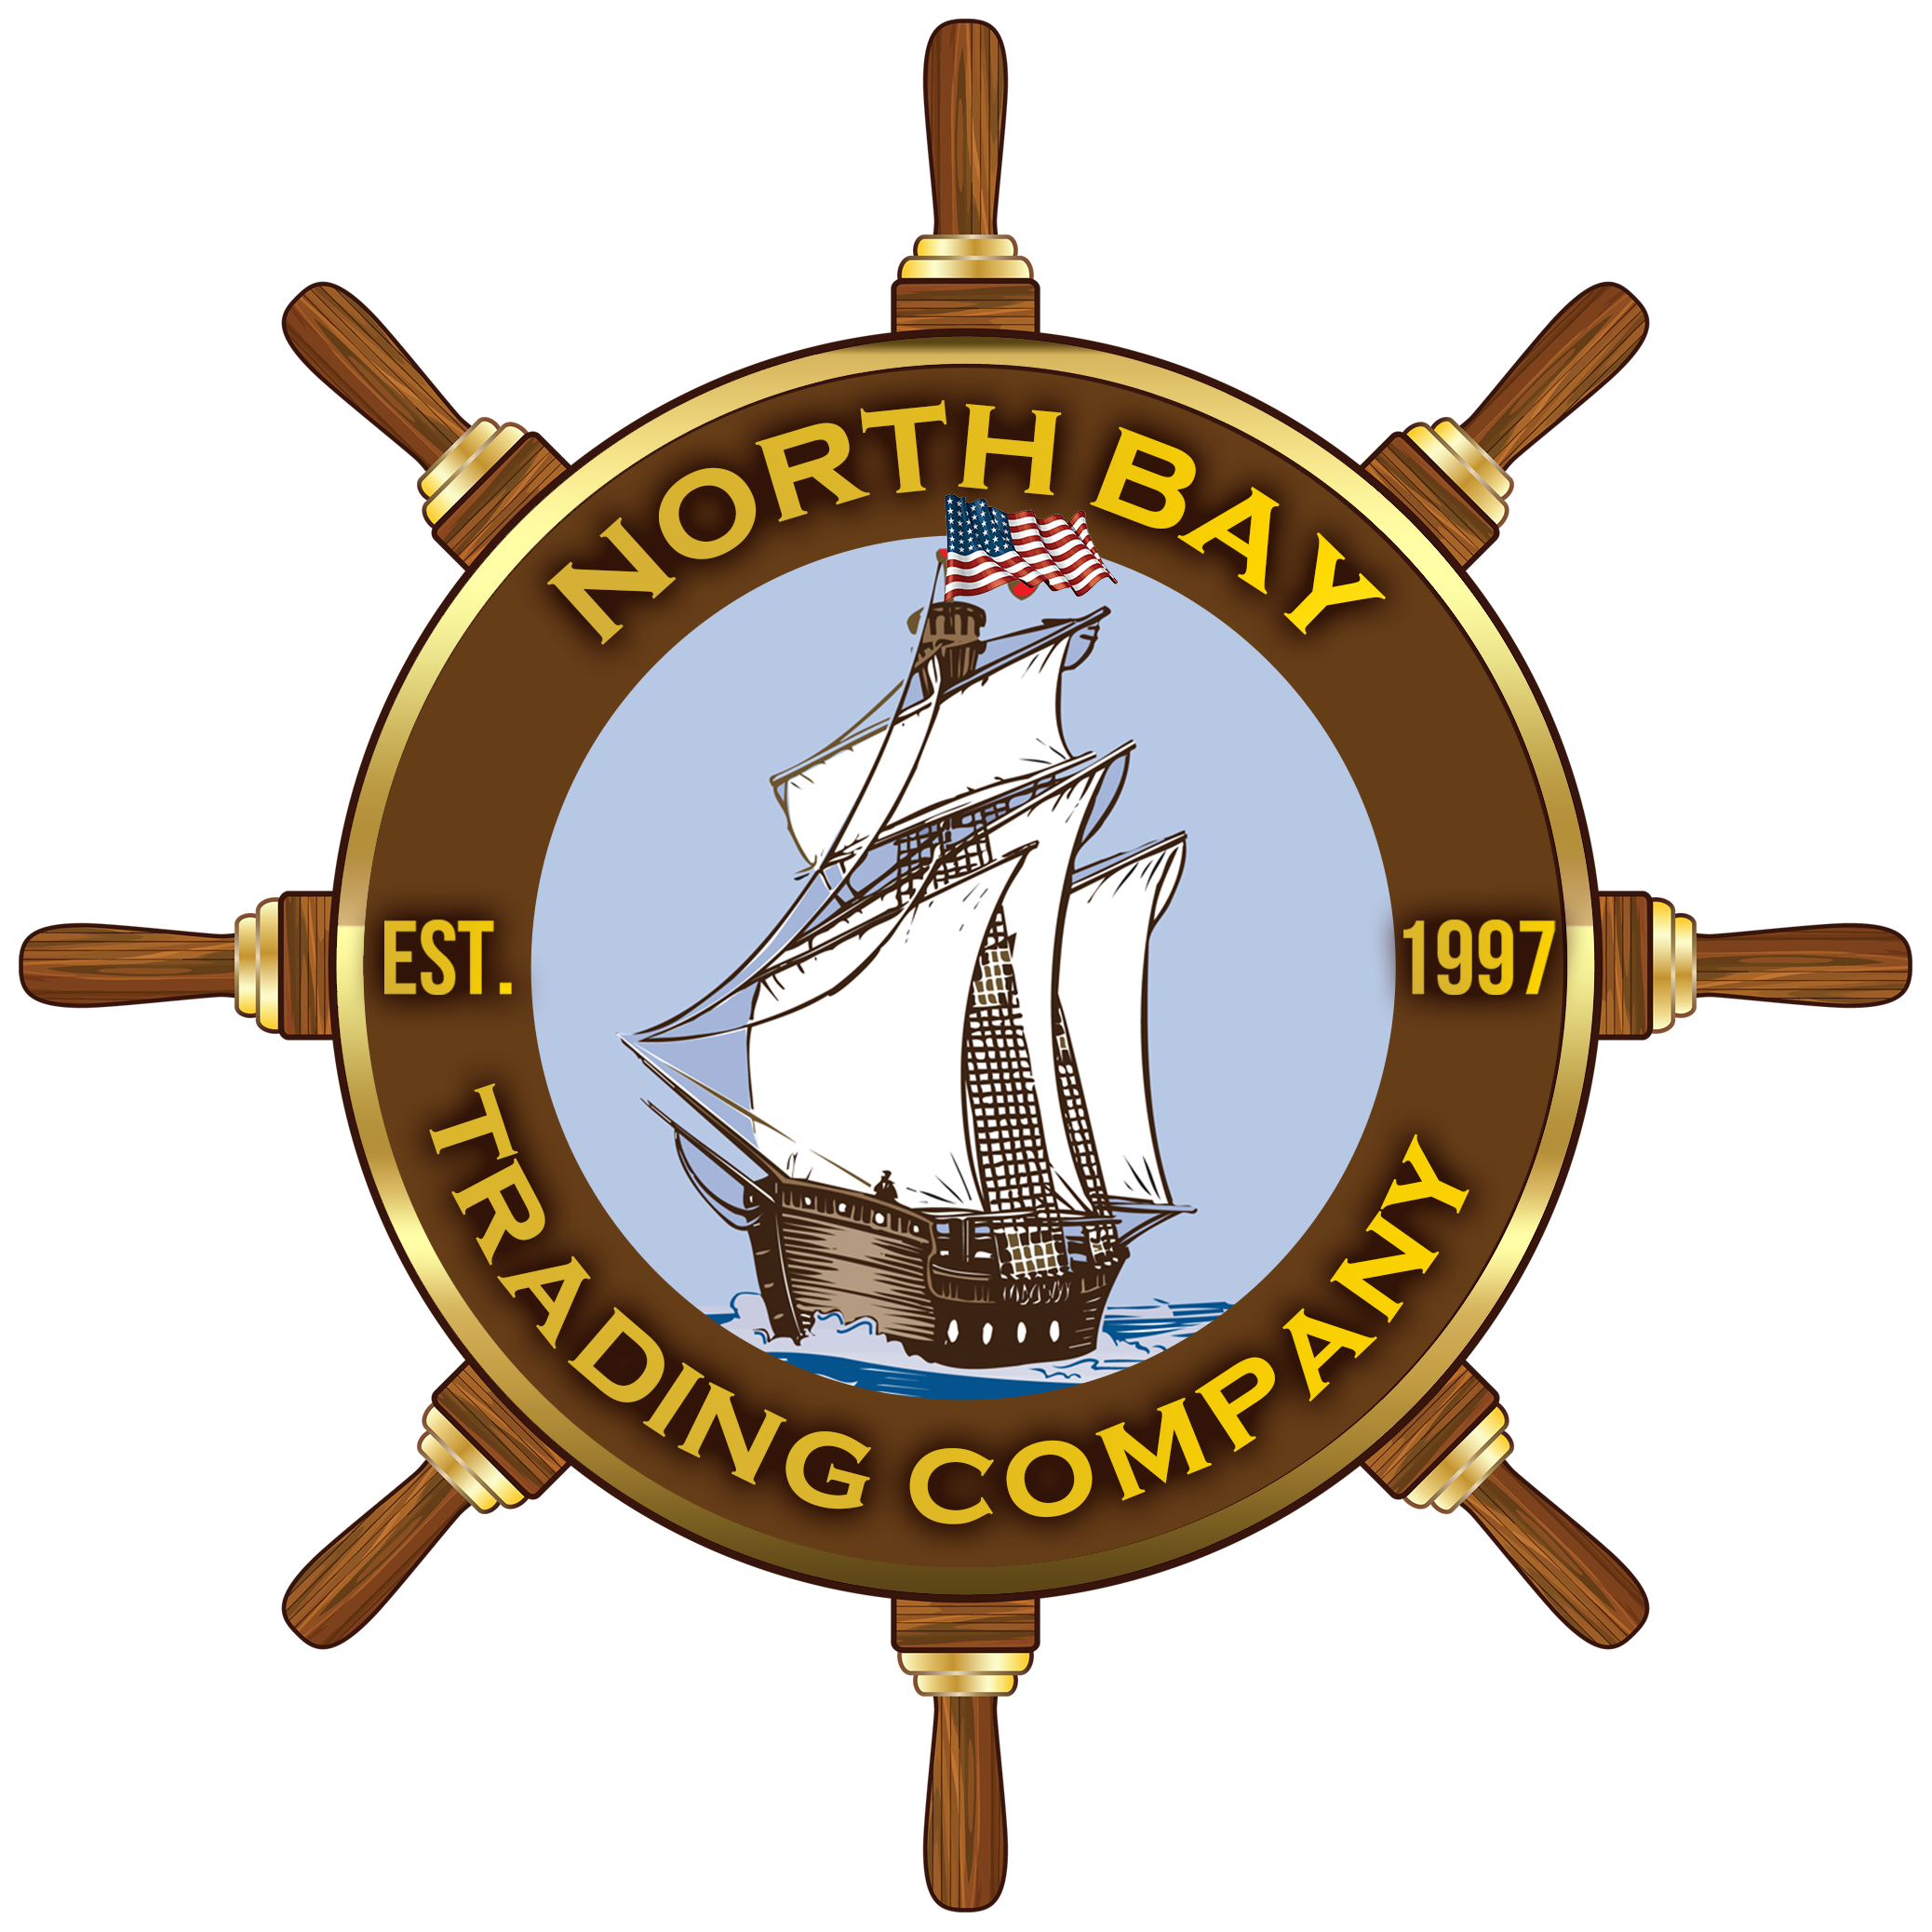 North Bay Trading Company, Inc.